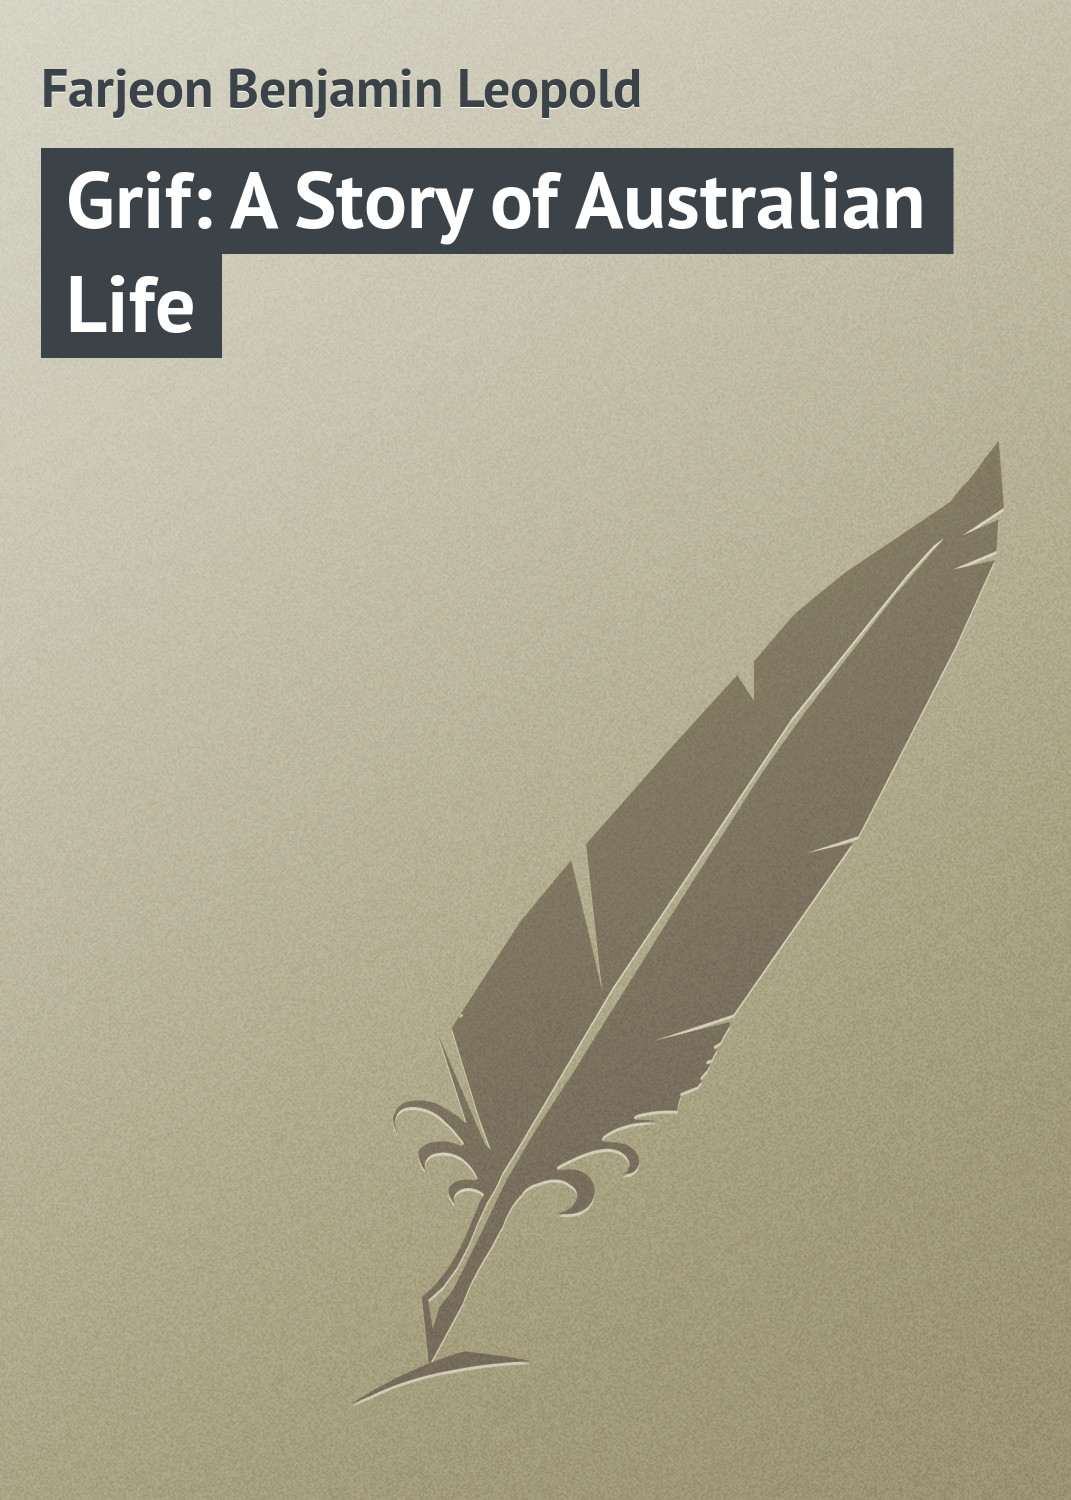 Книга Grif: A Story of Australian Life из серии , созданная Benjamin Farjeon, может относится к жанру Зарубежная классика. Стоимость электронной книги Grif: A Story of Australian Life с идентификатором 23148995 составляет 5.99 руб.